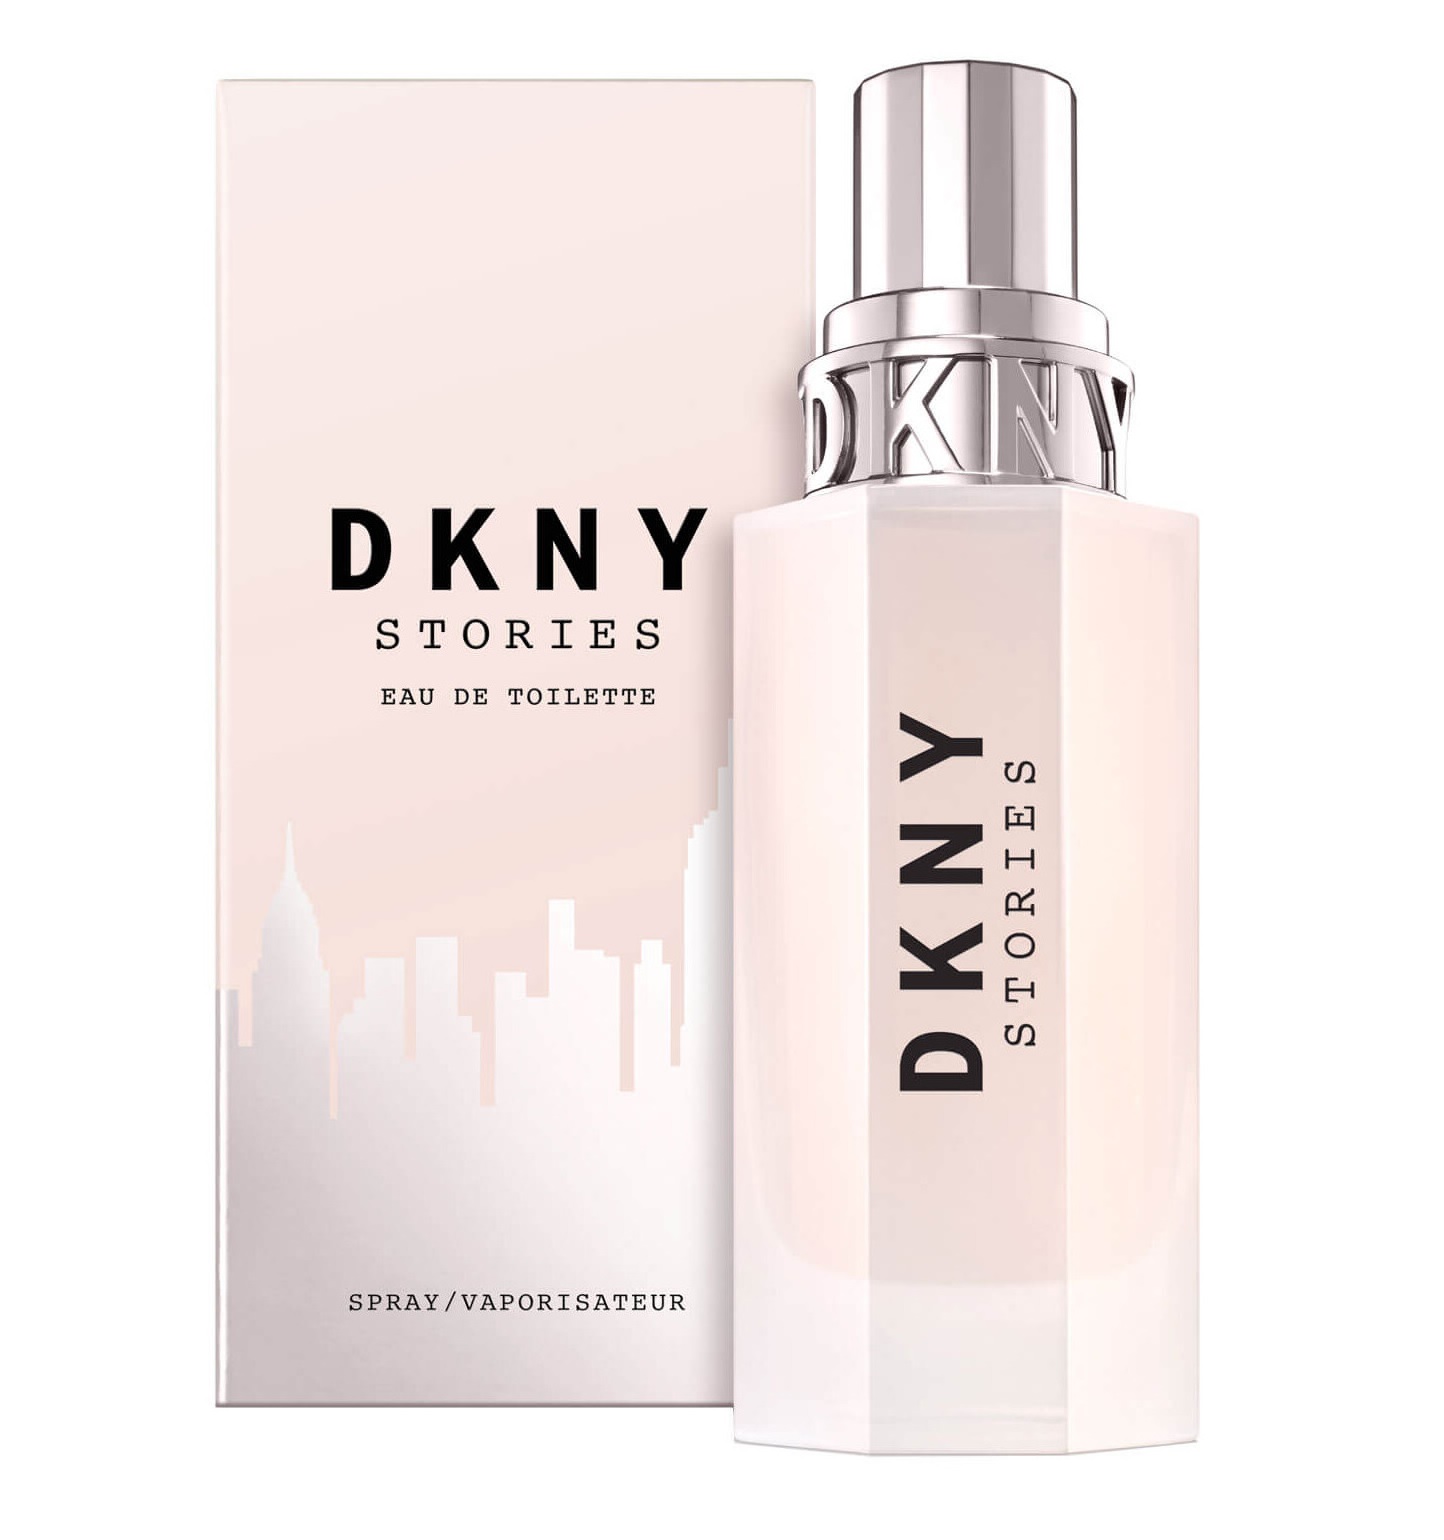 DKNY Stories Eau de Toilette